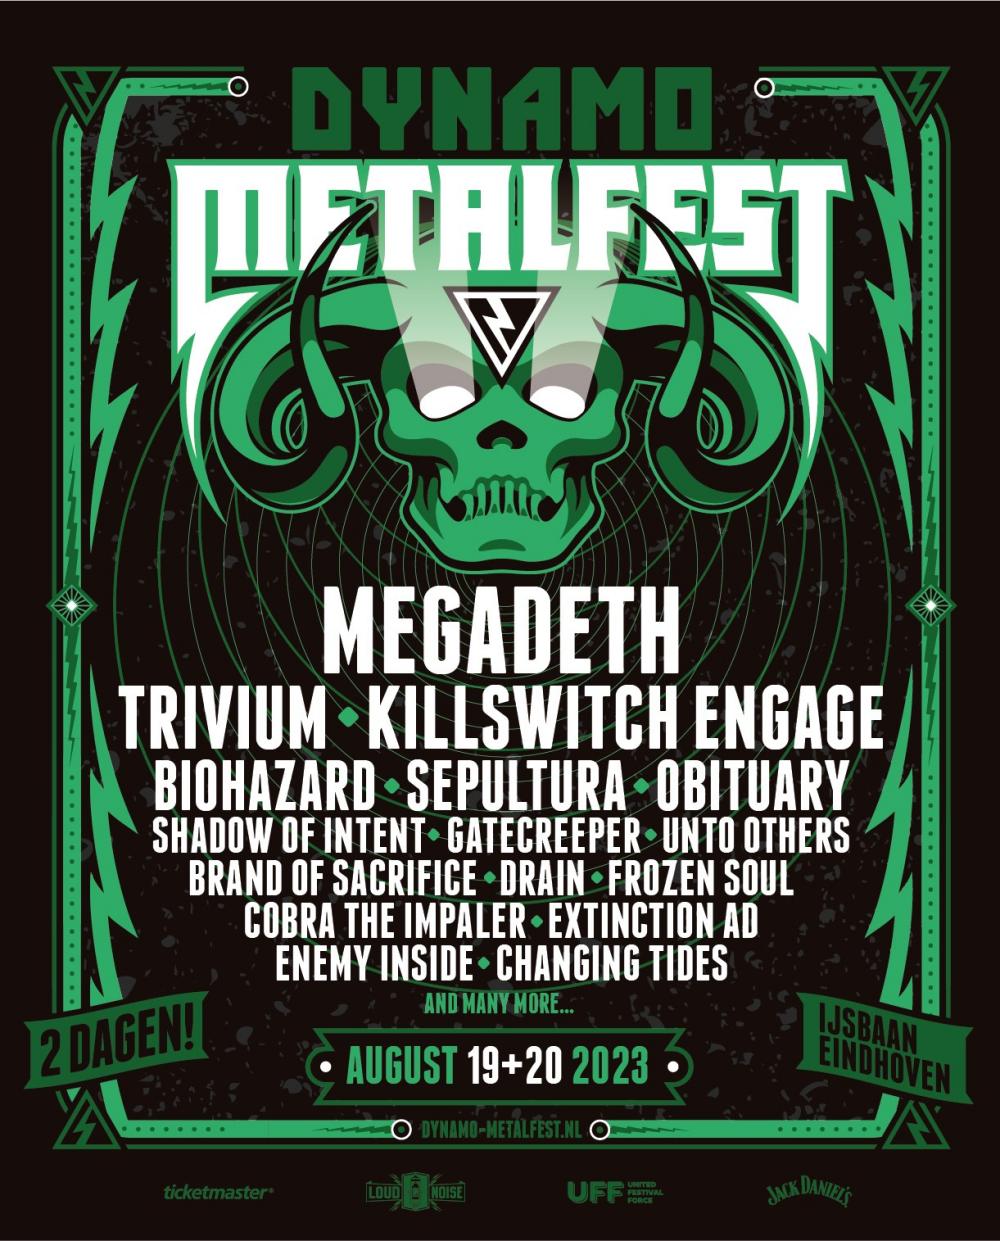 Megadeth en meer naar Dynamo Metalfest